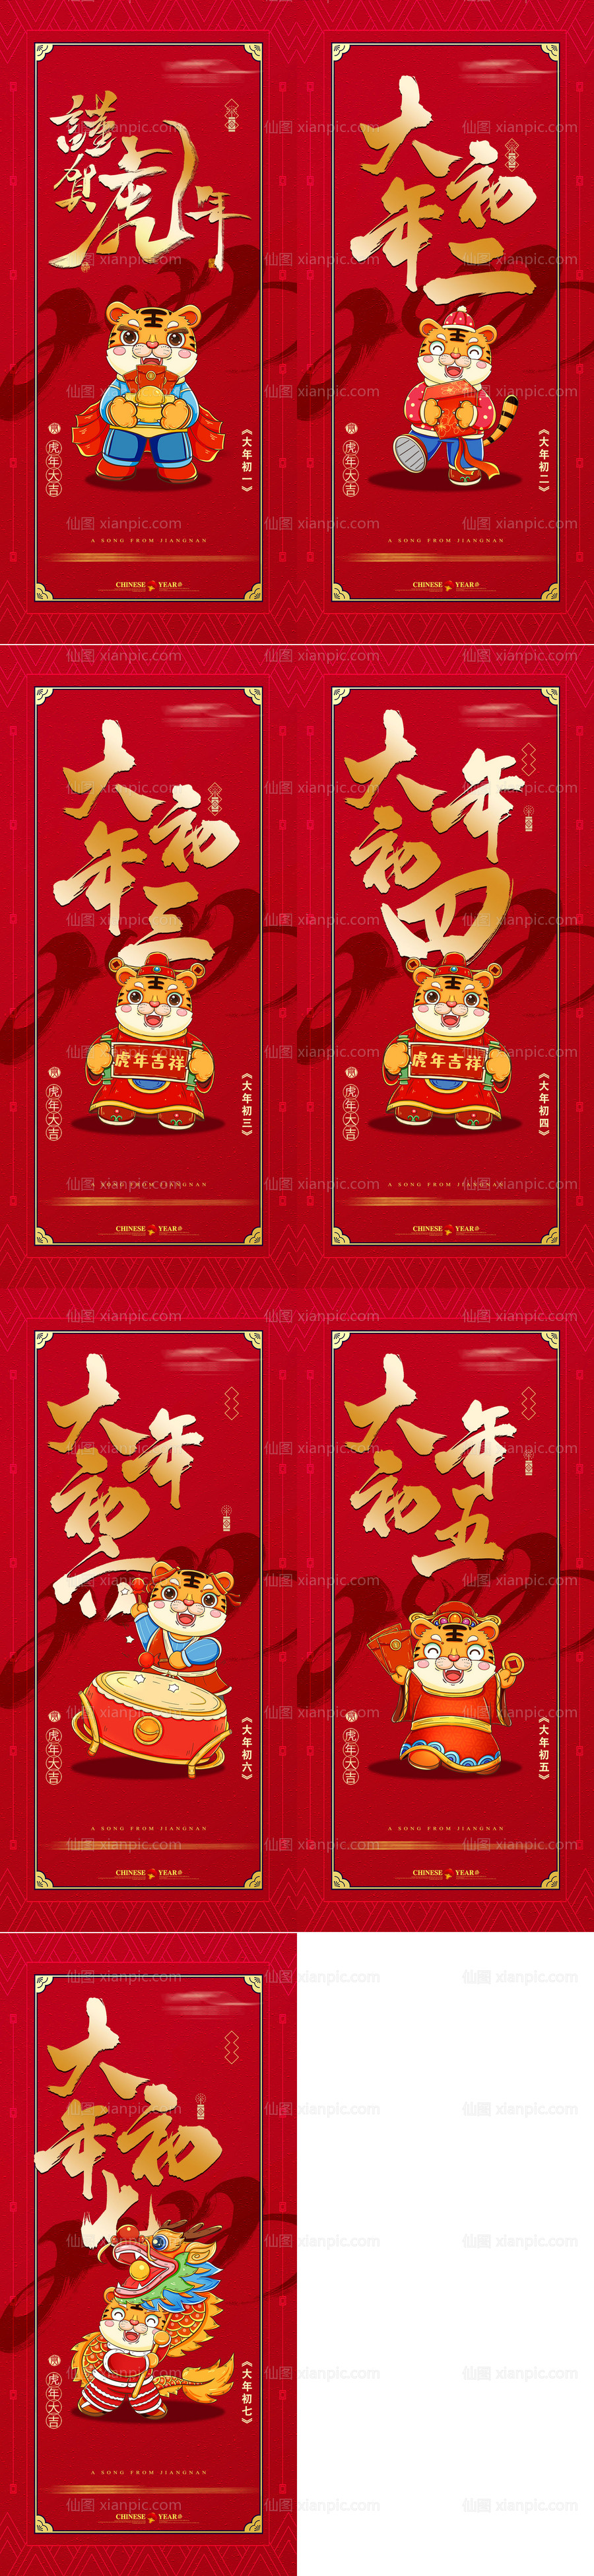 素材乐-春节初一至初七系列海报